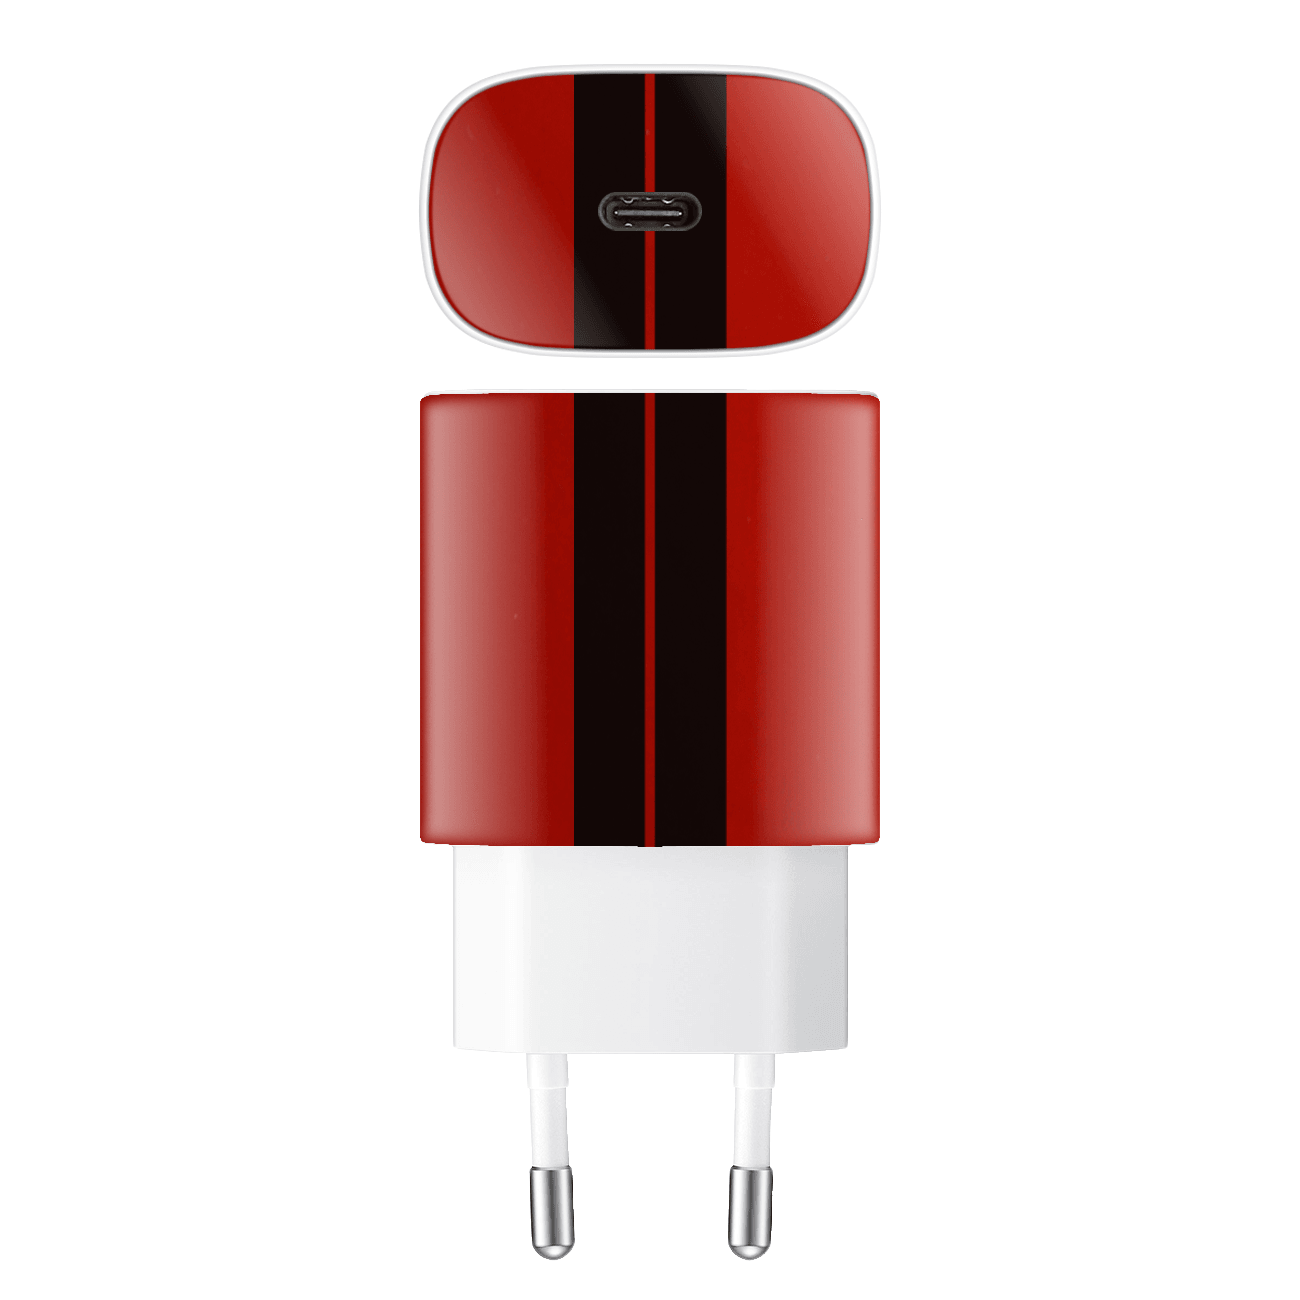 Samsung 25w Şarj Aleti Kaplama Ateş Kırmızısı Çift Siyah Şerit